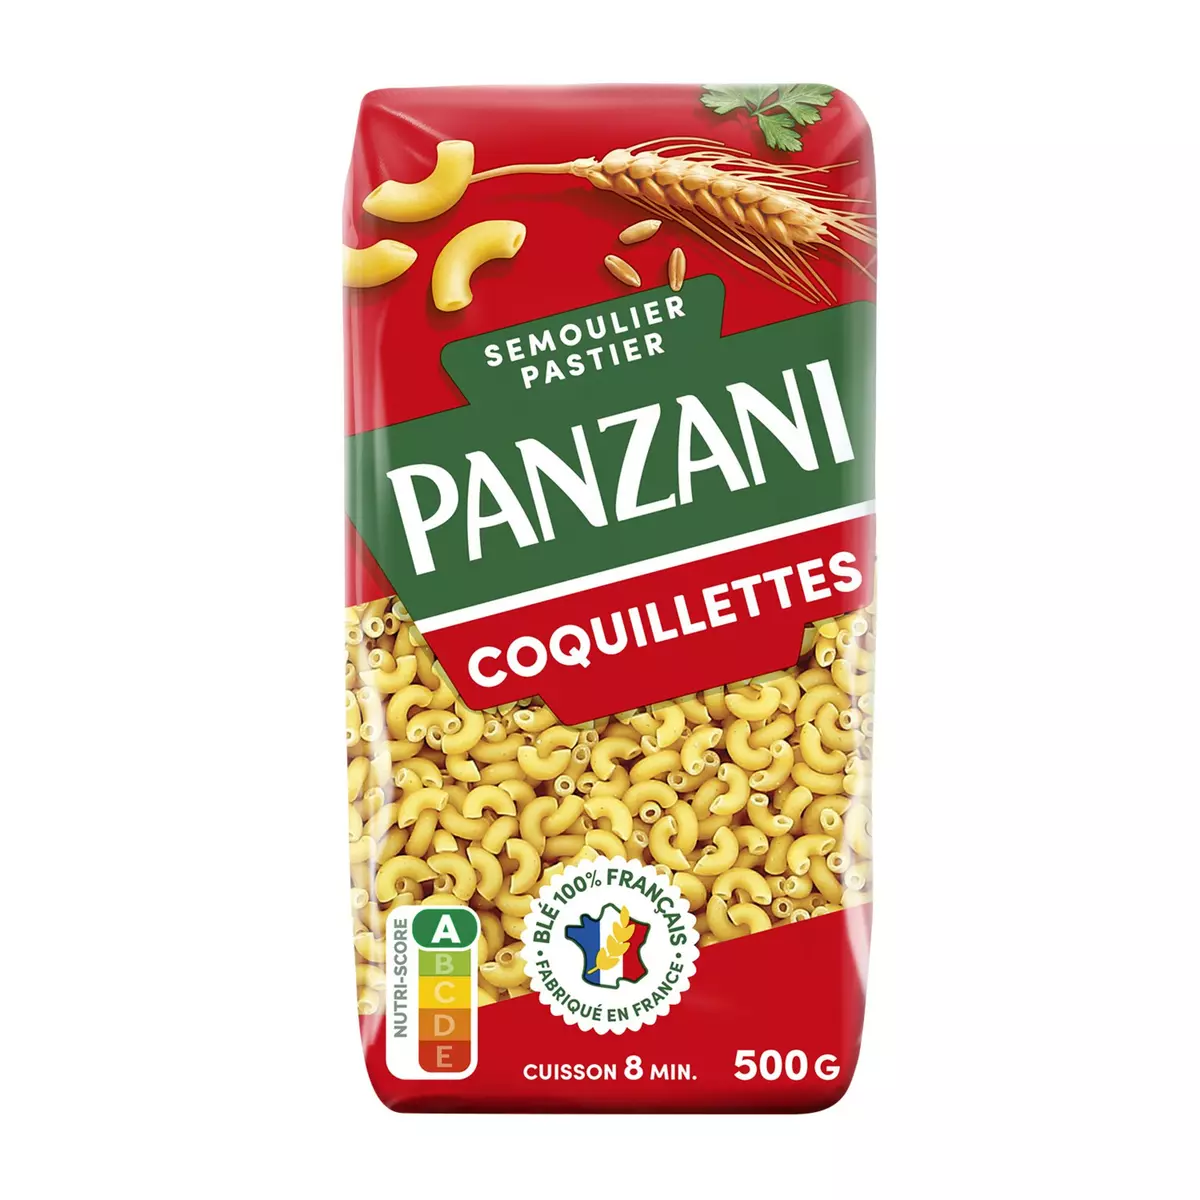 PANZANI Coquillettes 500g